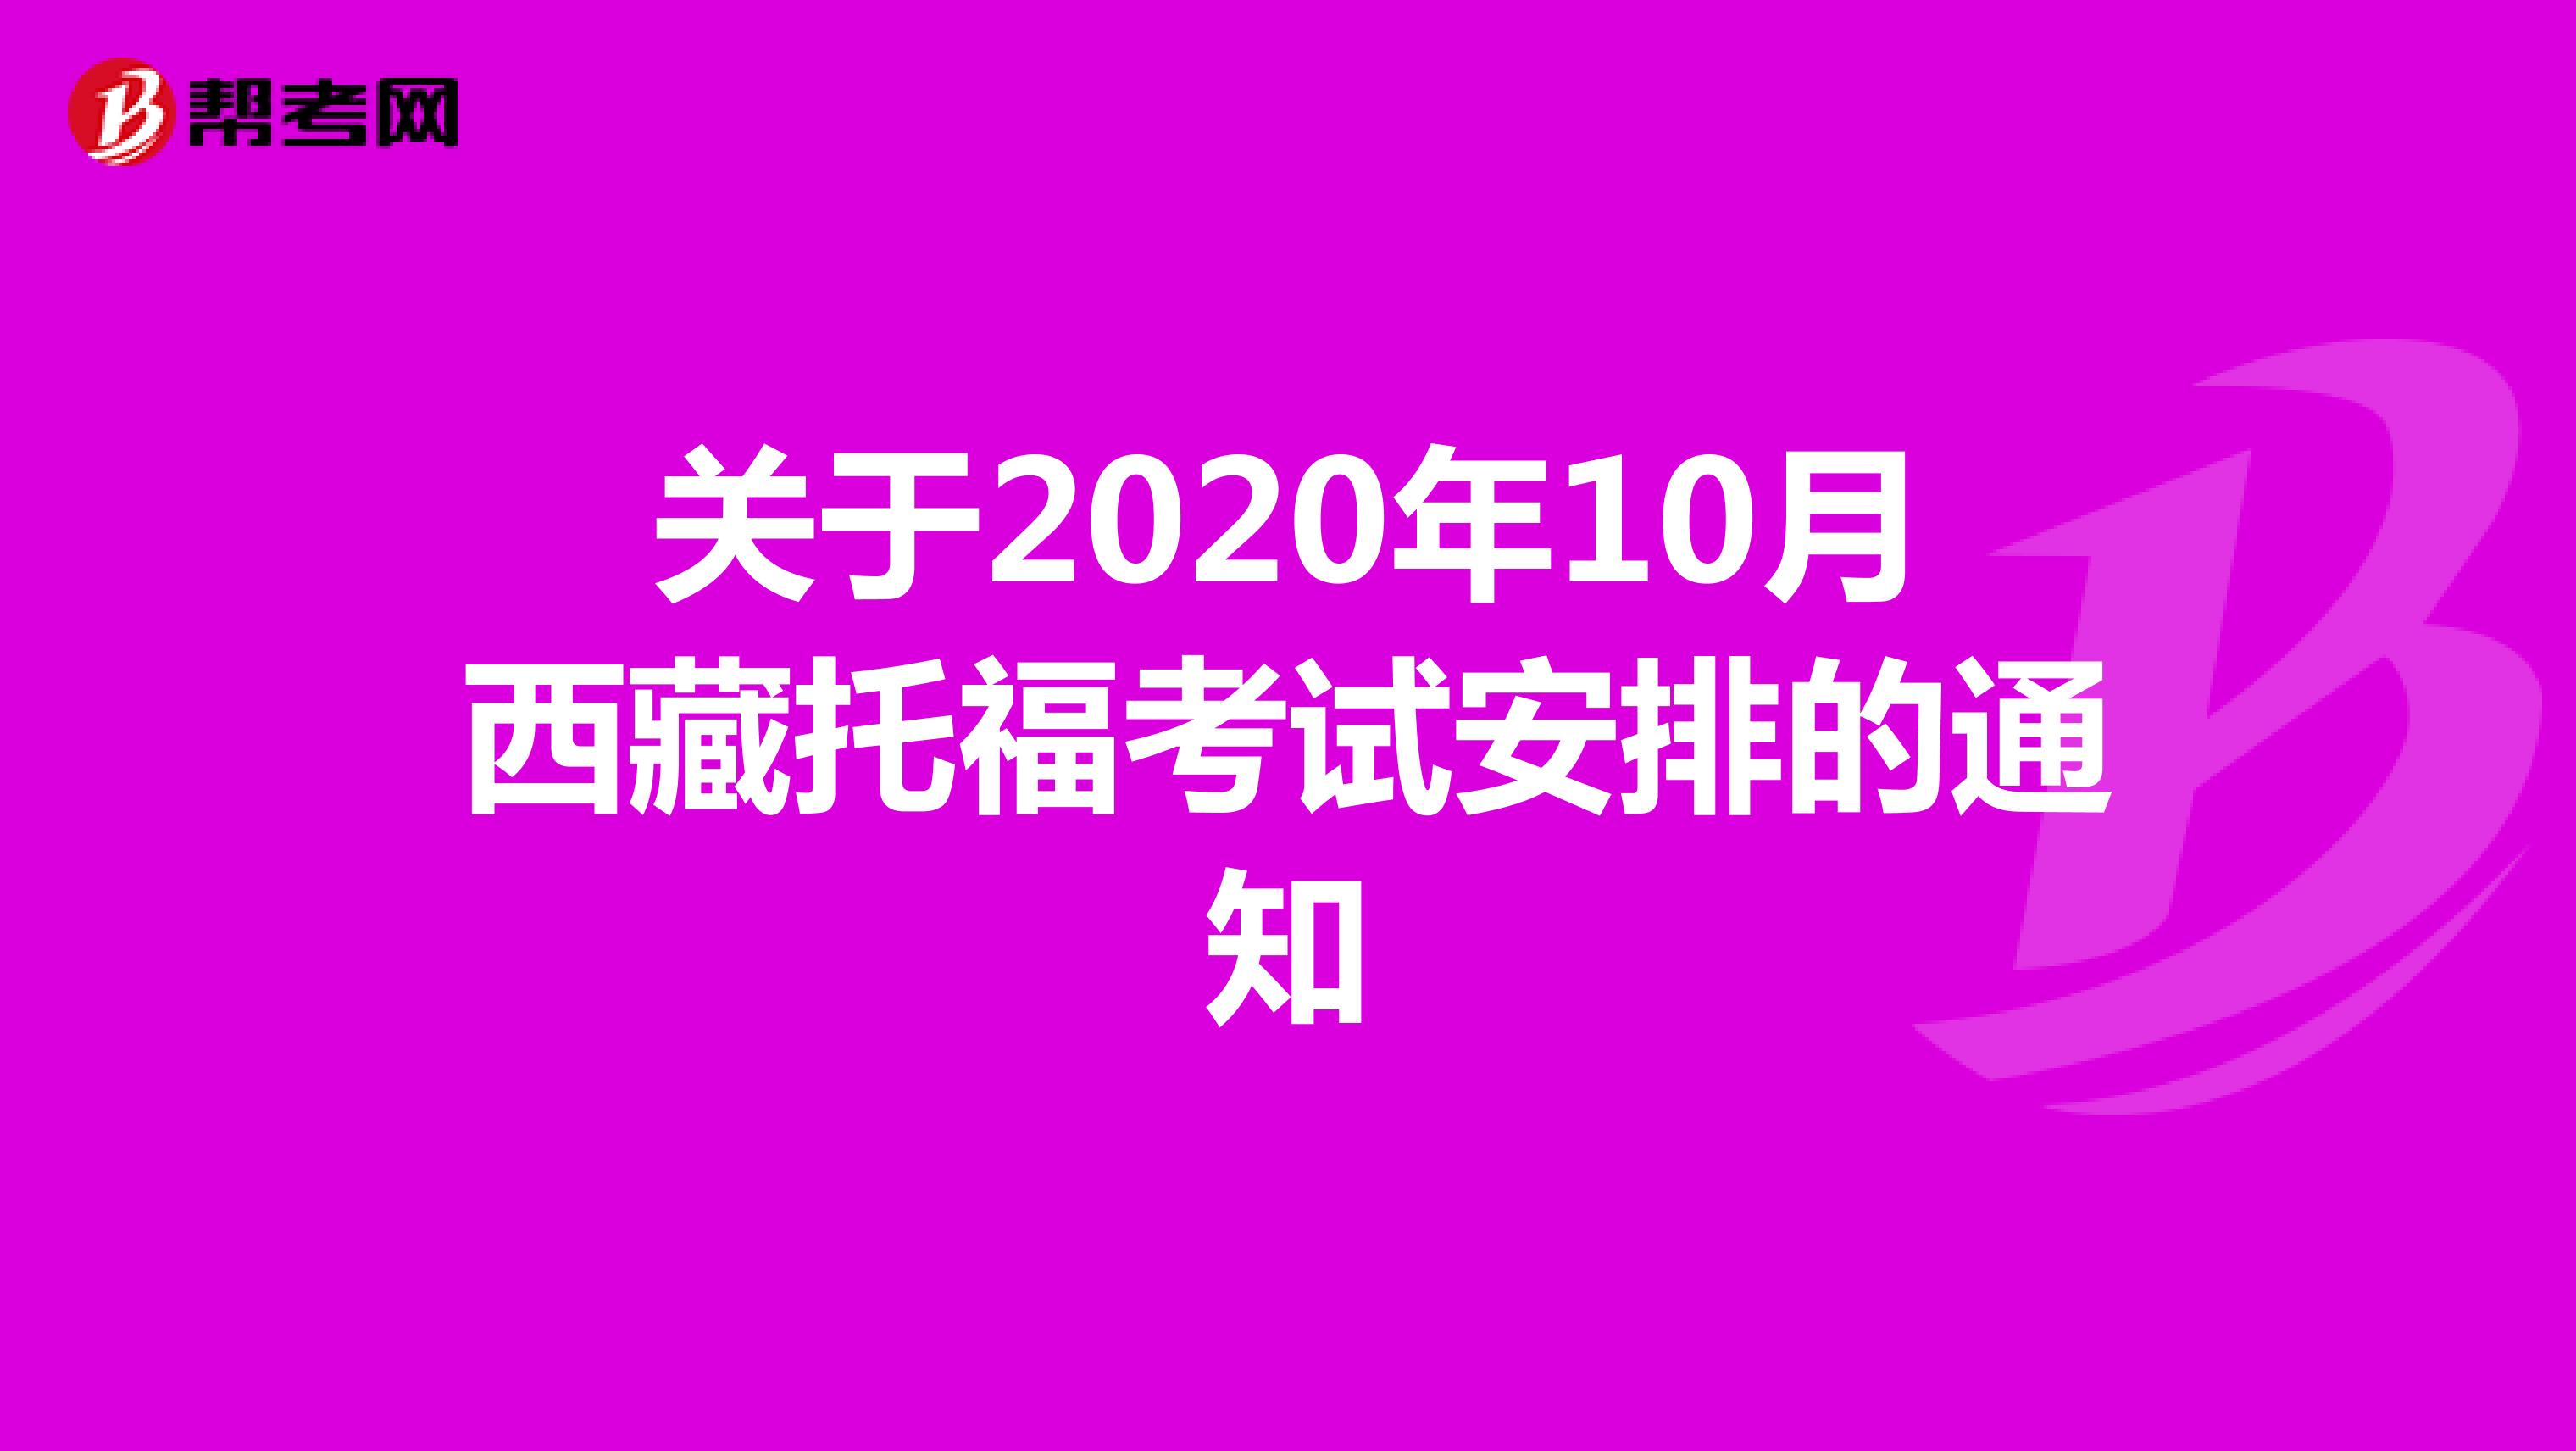 关于2020年10月西藏托福考试安排的通知